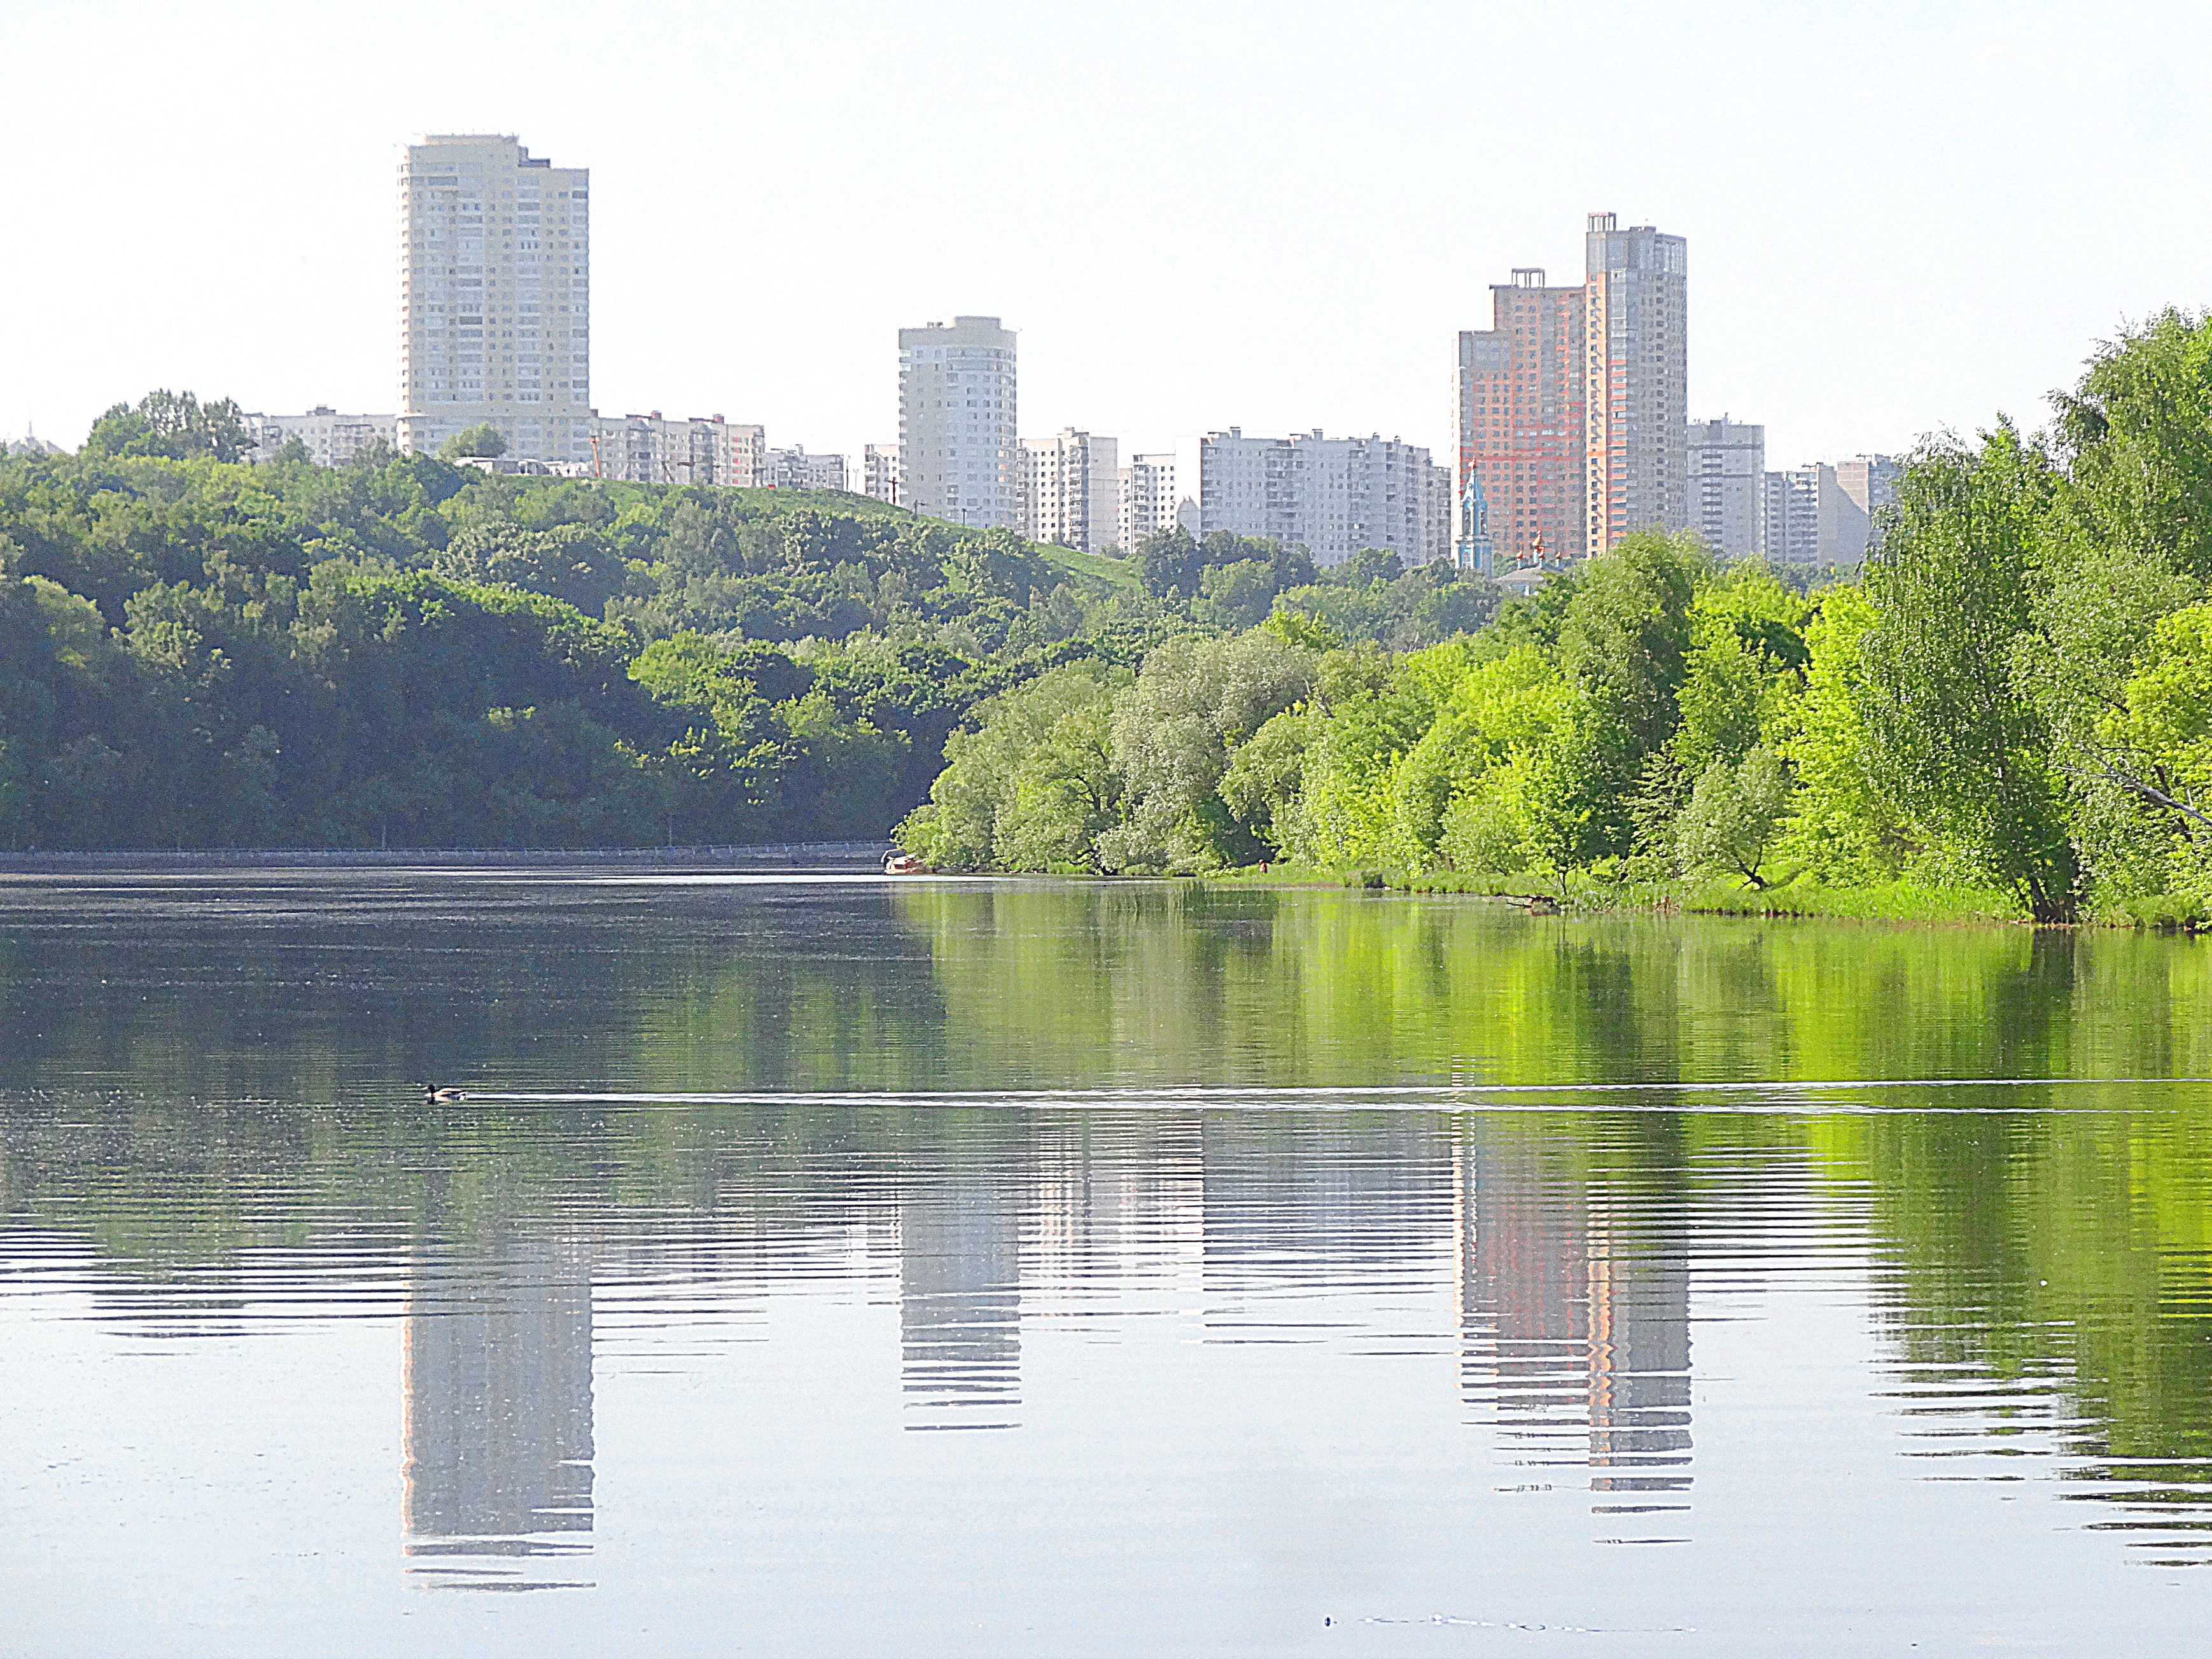 Филёвский парк, Москва-река и здания Крылатского вдали. Фото Морошкина В.В.